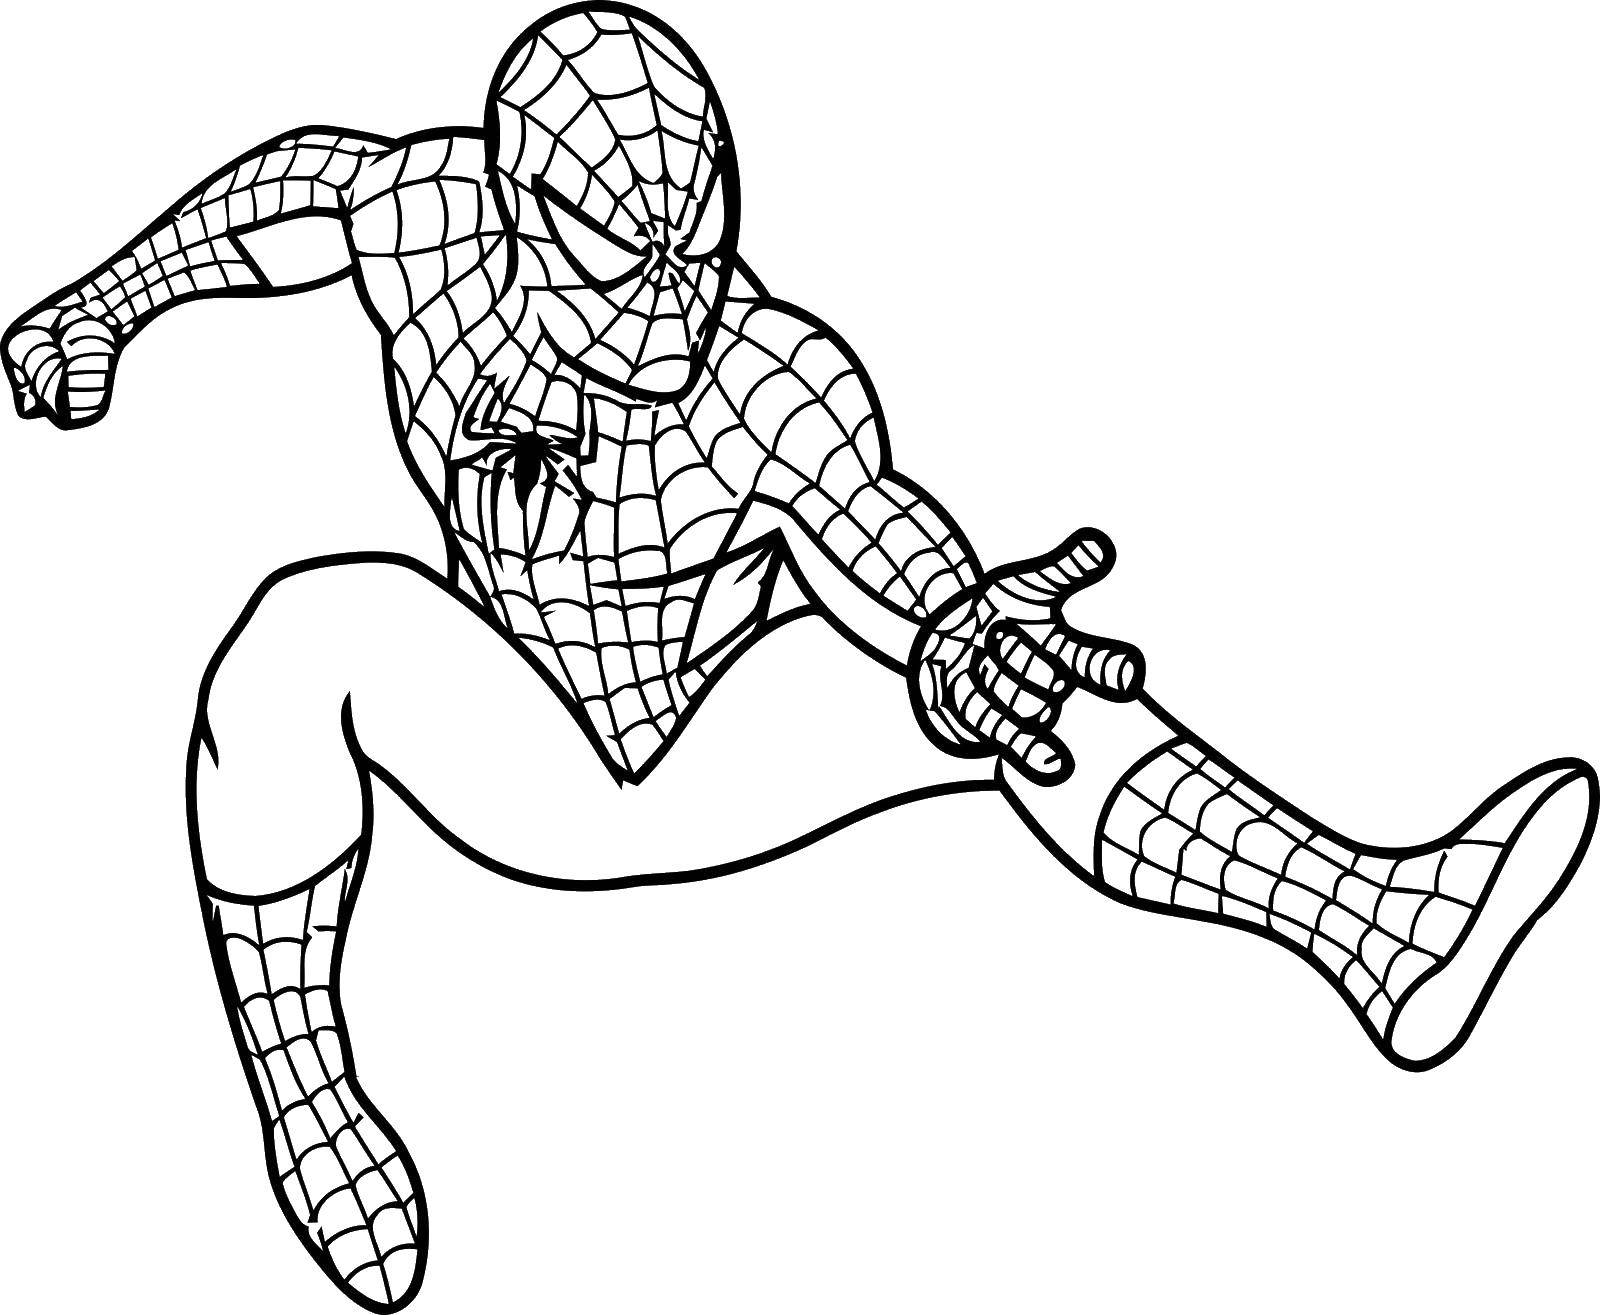 Название: Раскраска Человек паук. Категория: человек паук. Теги: фильм, мультфильм, человек паук, спайдермен.